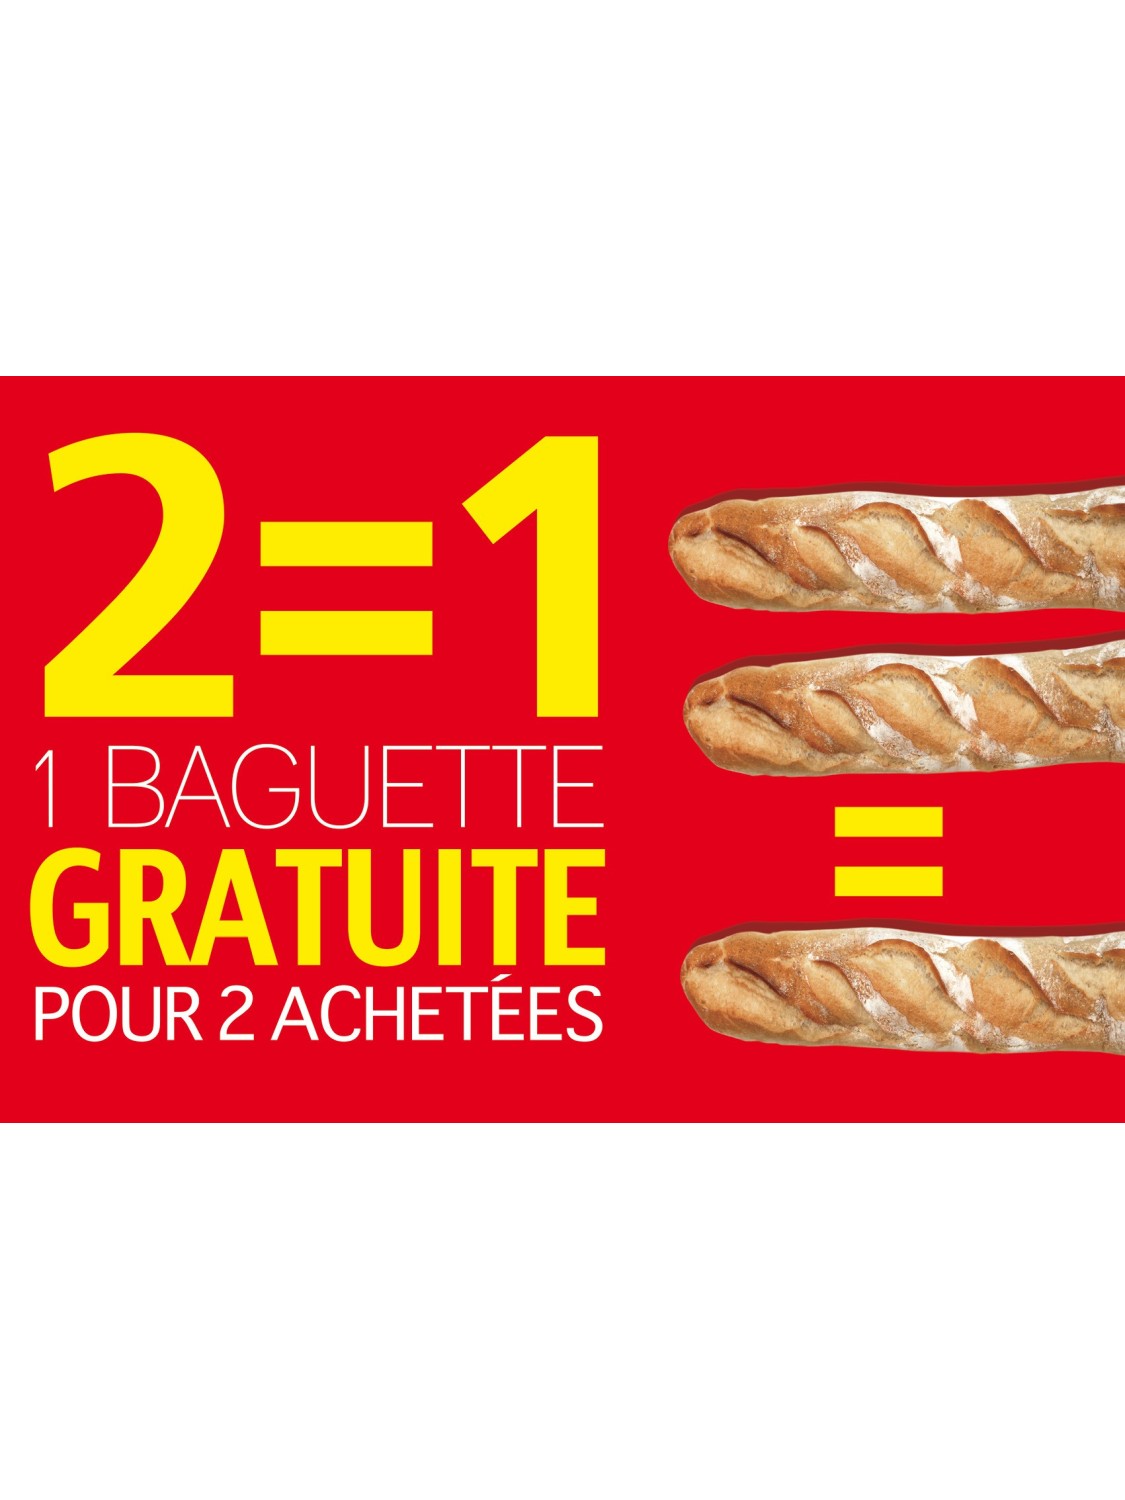 Affiche Boulangerie "2 égal 1 gratuite pour 2 achetées"